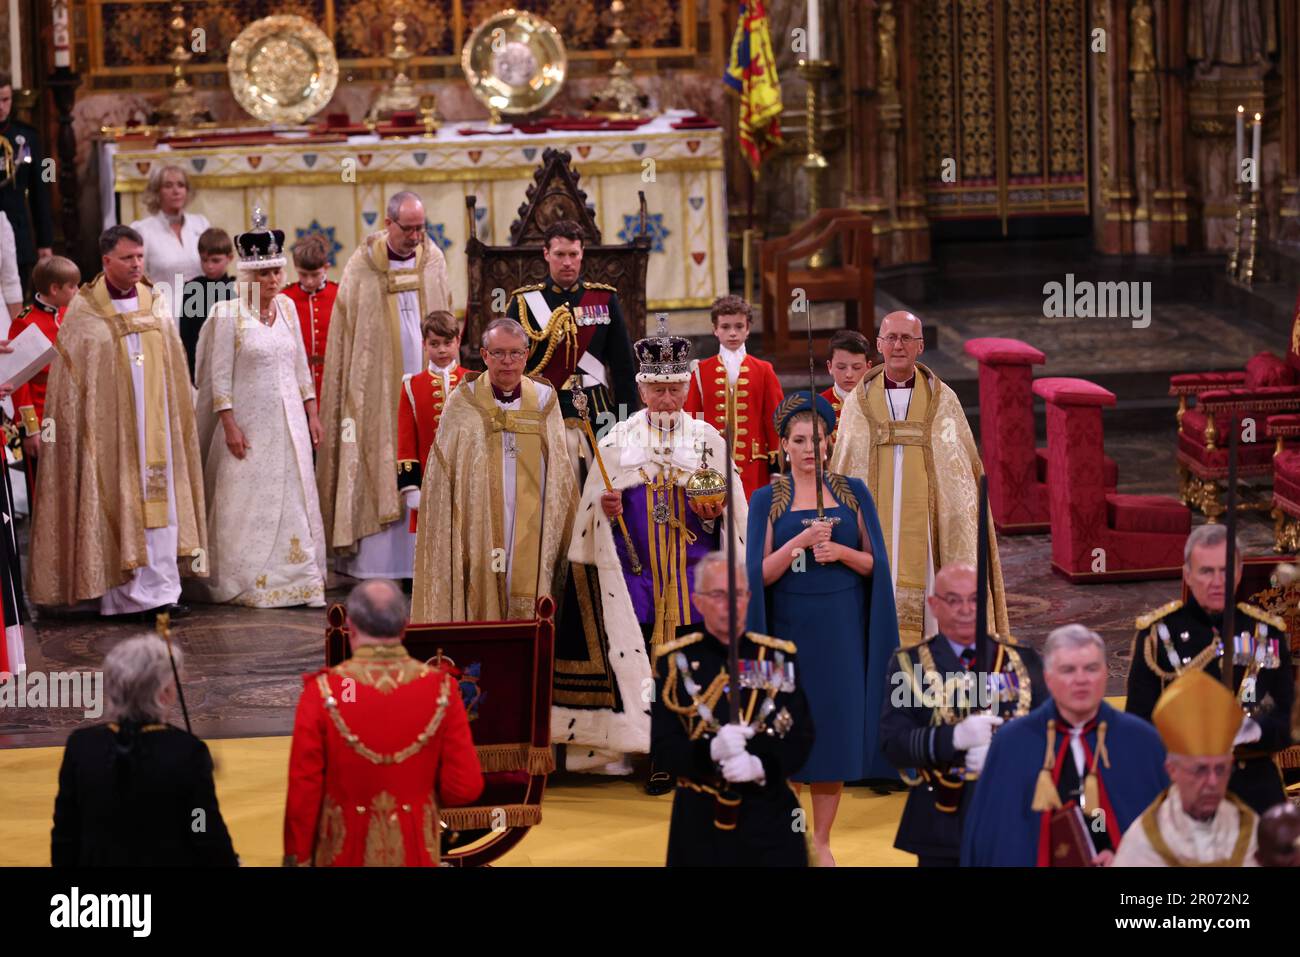 Le roi Charles III avec l'Orbe du souverain, en tant que Lord Président du Conseil, Penny Mordaunt, porte l'épée d'État, pendant son couronnement à l'abbaye de Westminster, Londres. Date de la photo: Samedi 6 mai 2023. Banque D'Images